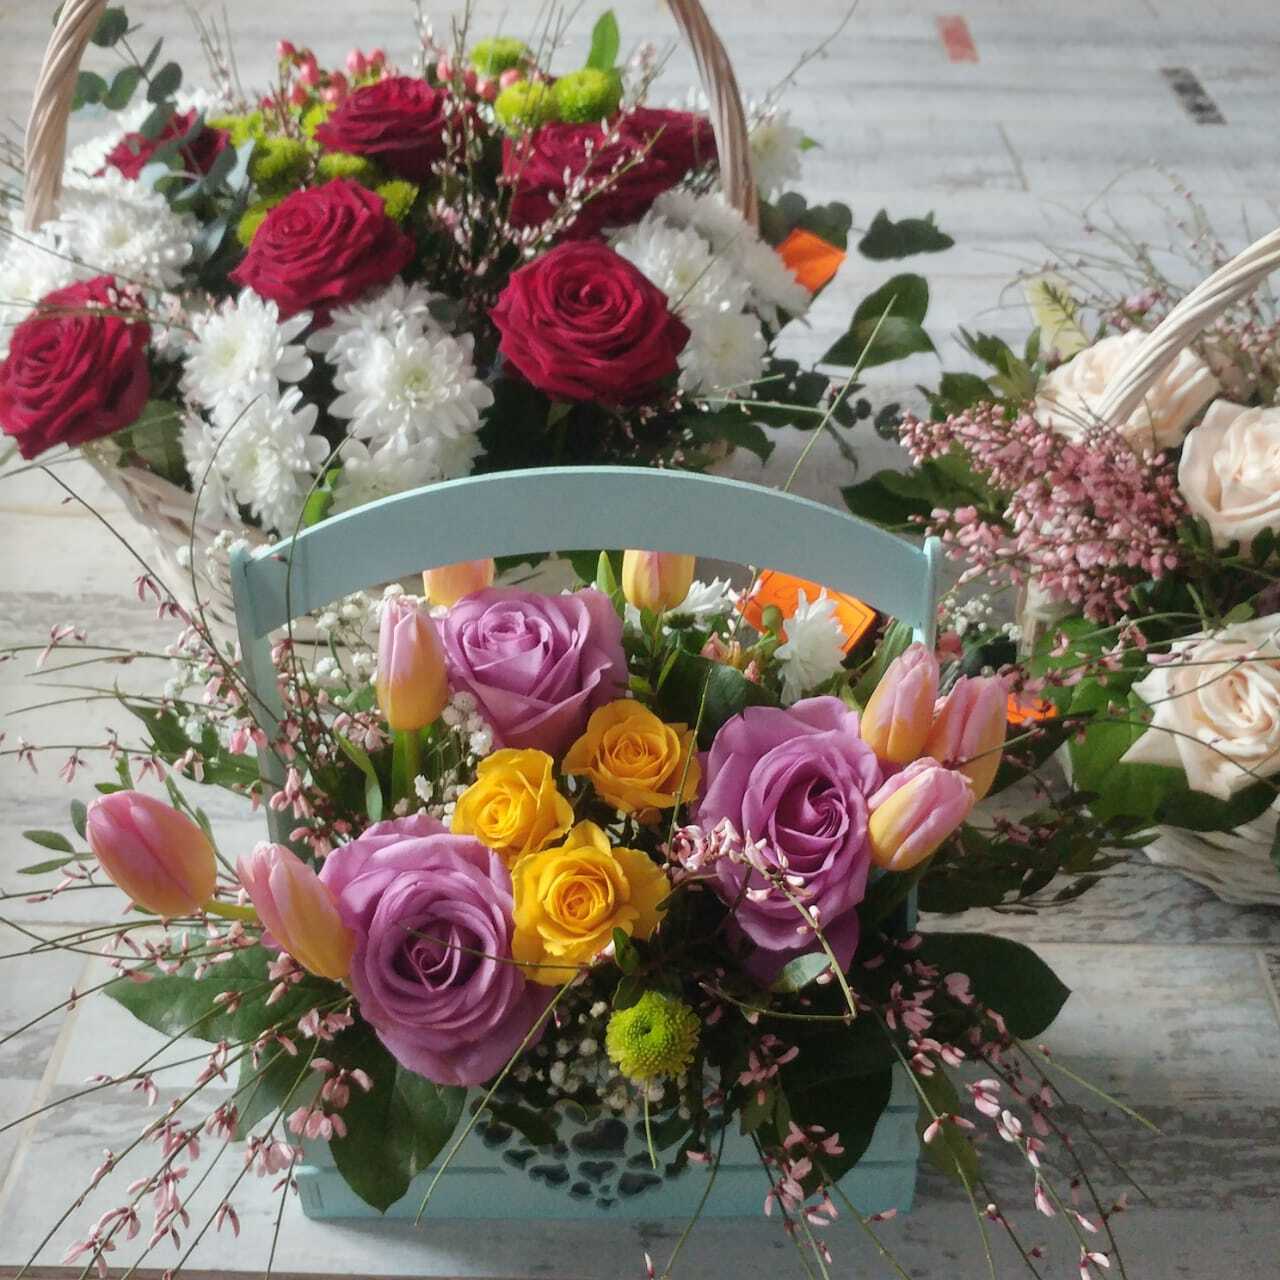 Доставка цветов в королеве на дом недорого без посредников с фото